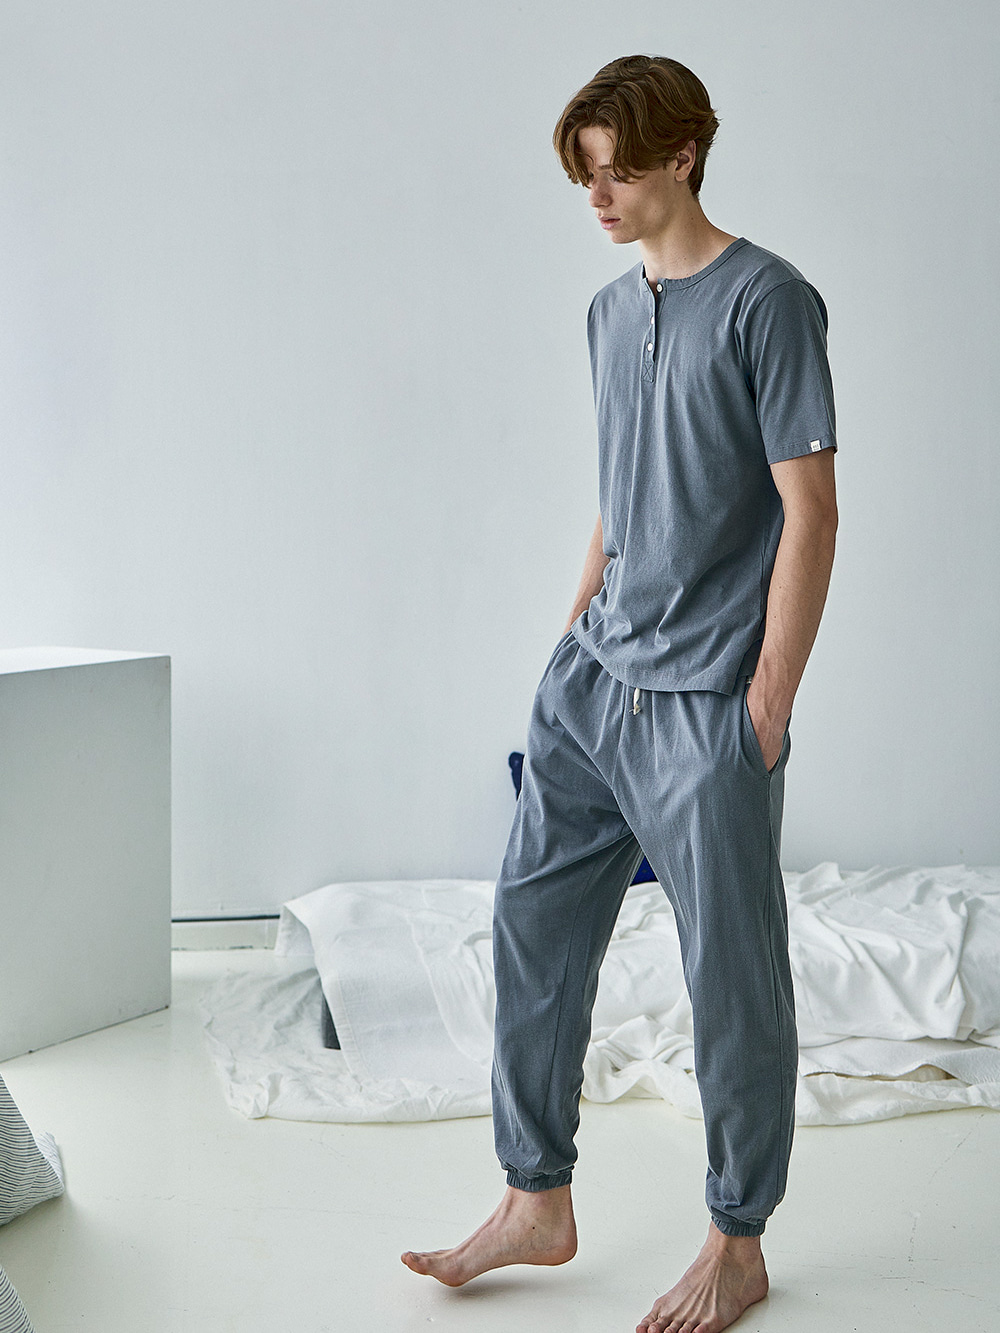 코즈넉 KOZNOK - 피그먼트 조거팬츠 남자 잠옷 파자마 홈웨어 남성 라운지웨어 잠옷바지